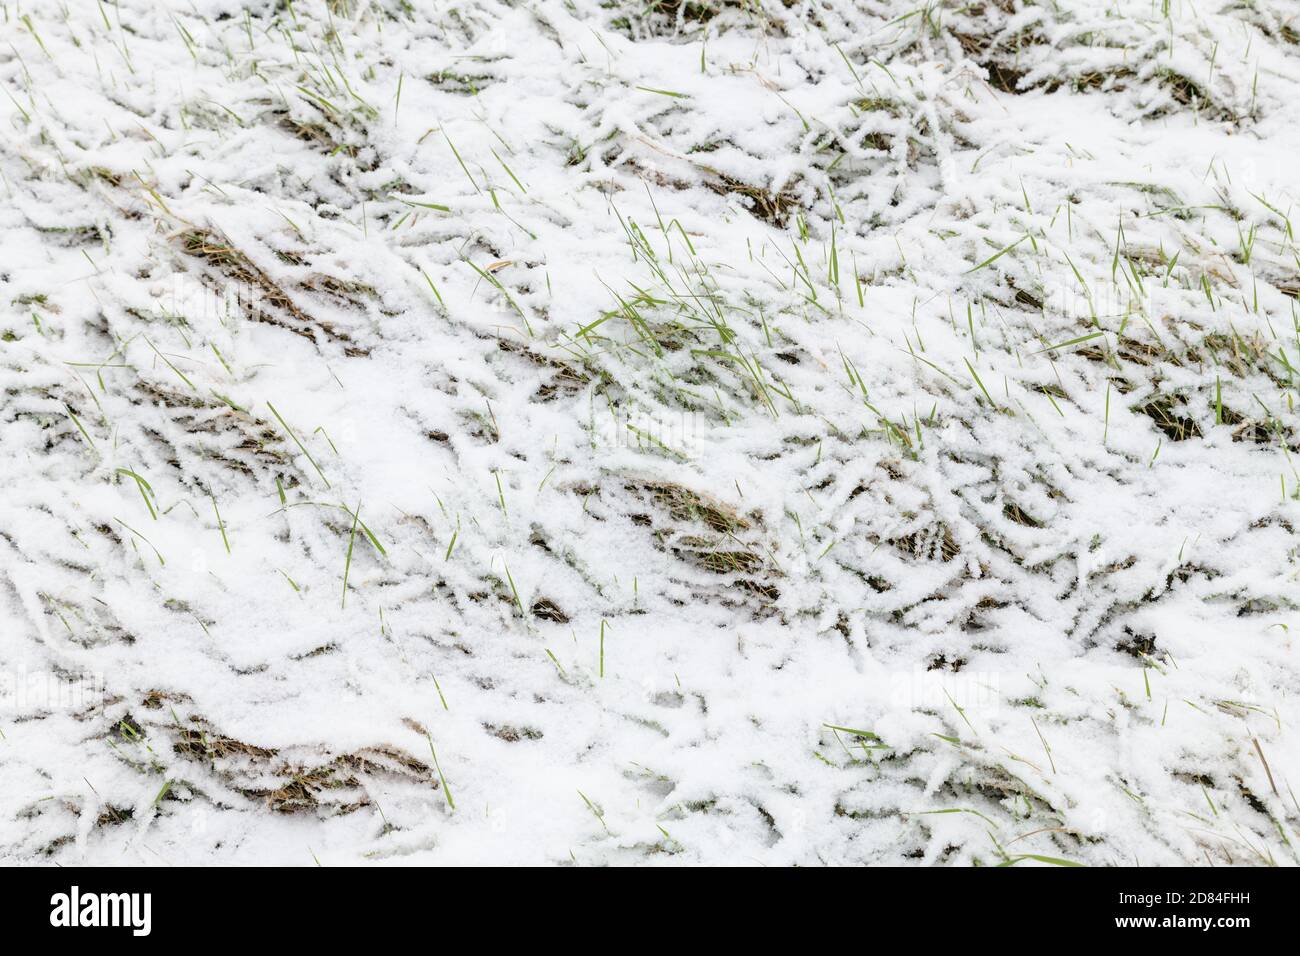 Die Textur des frischen Schnees bedeckt ein Grasfeld im Winter. Mehrere Grashalme kommen durch die dünne Schicht des Niederschlags, was Kontrast hinzufügt. Stockfoto